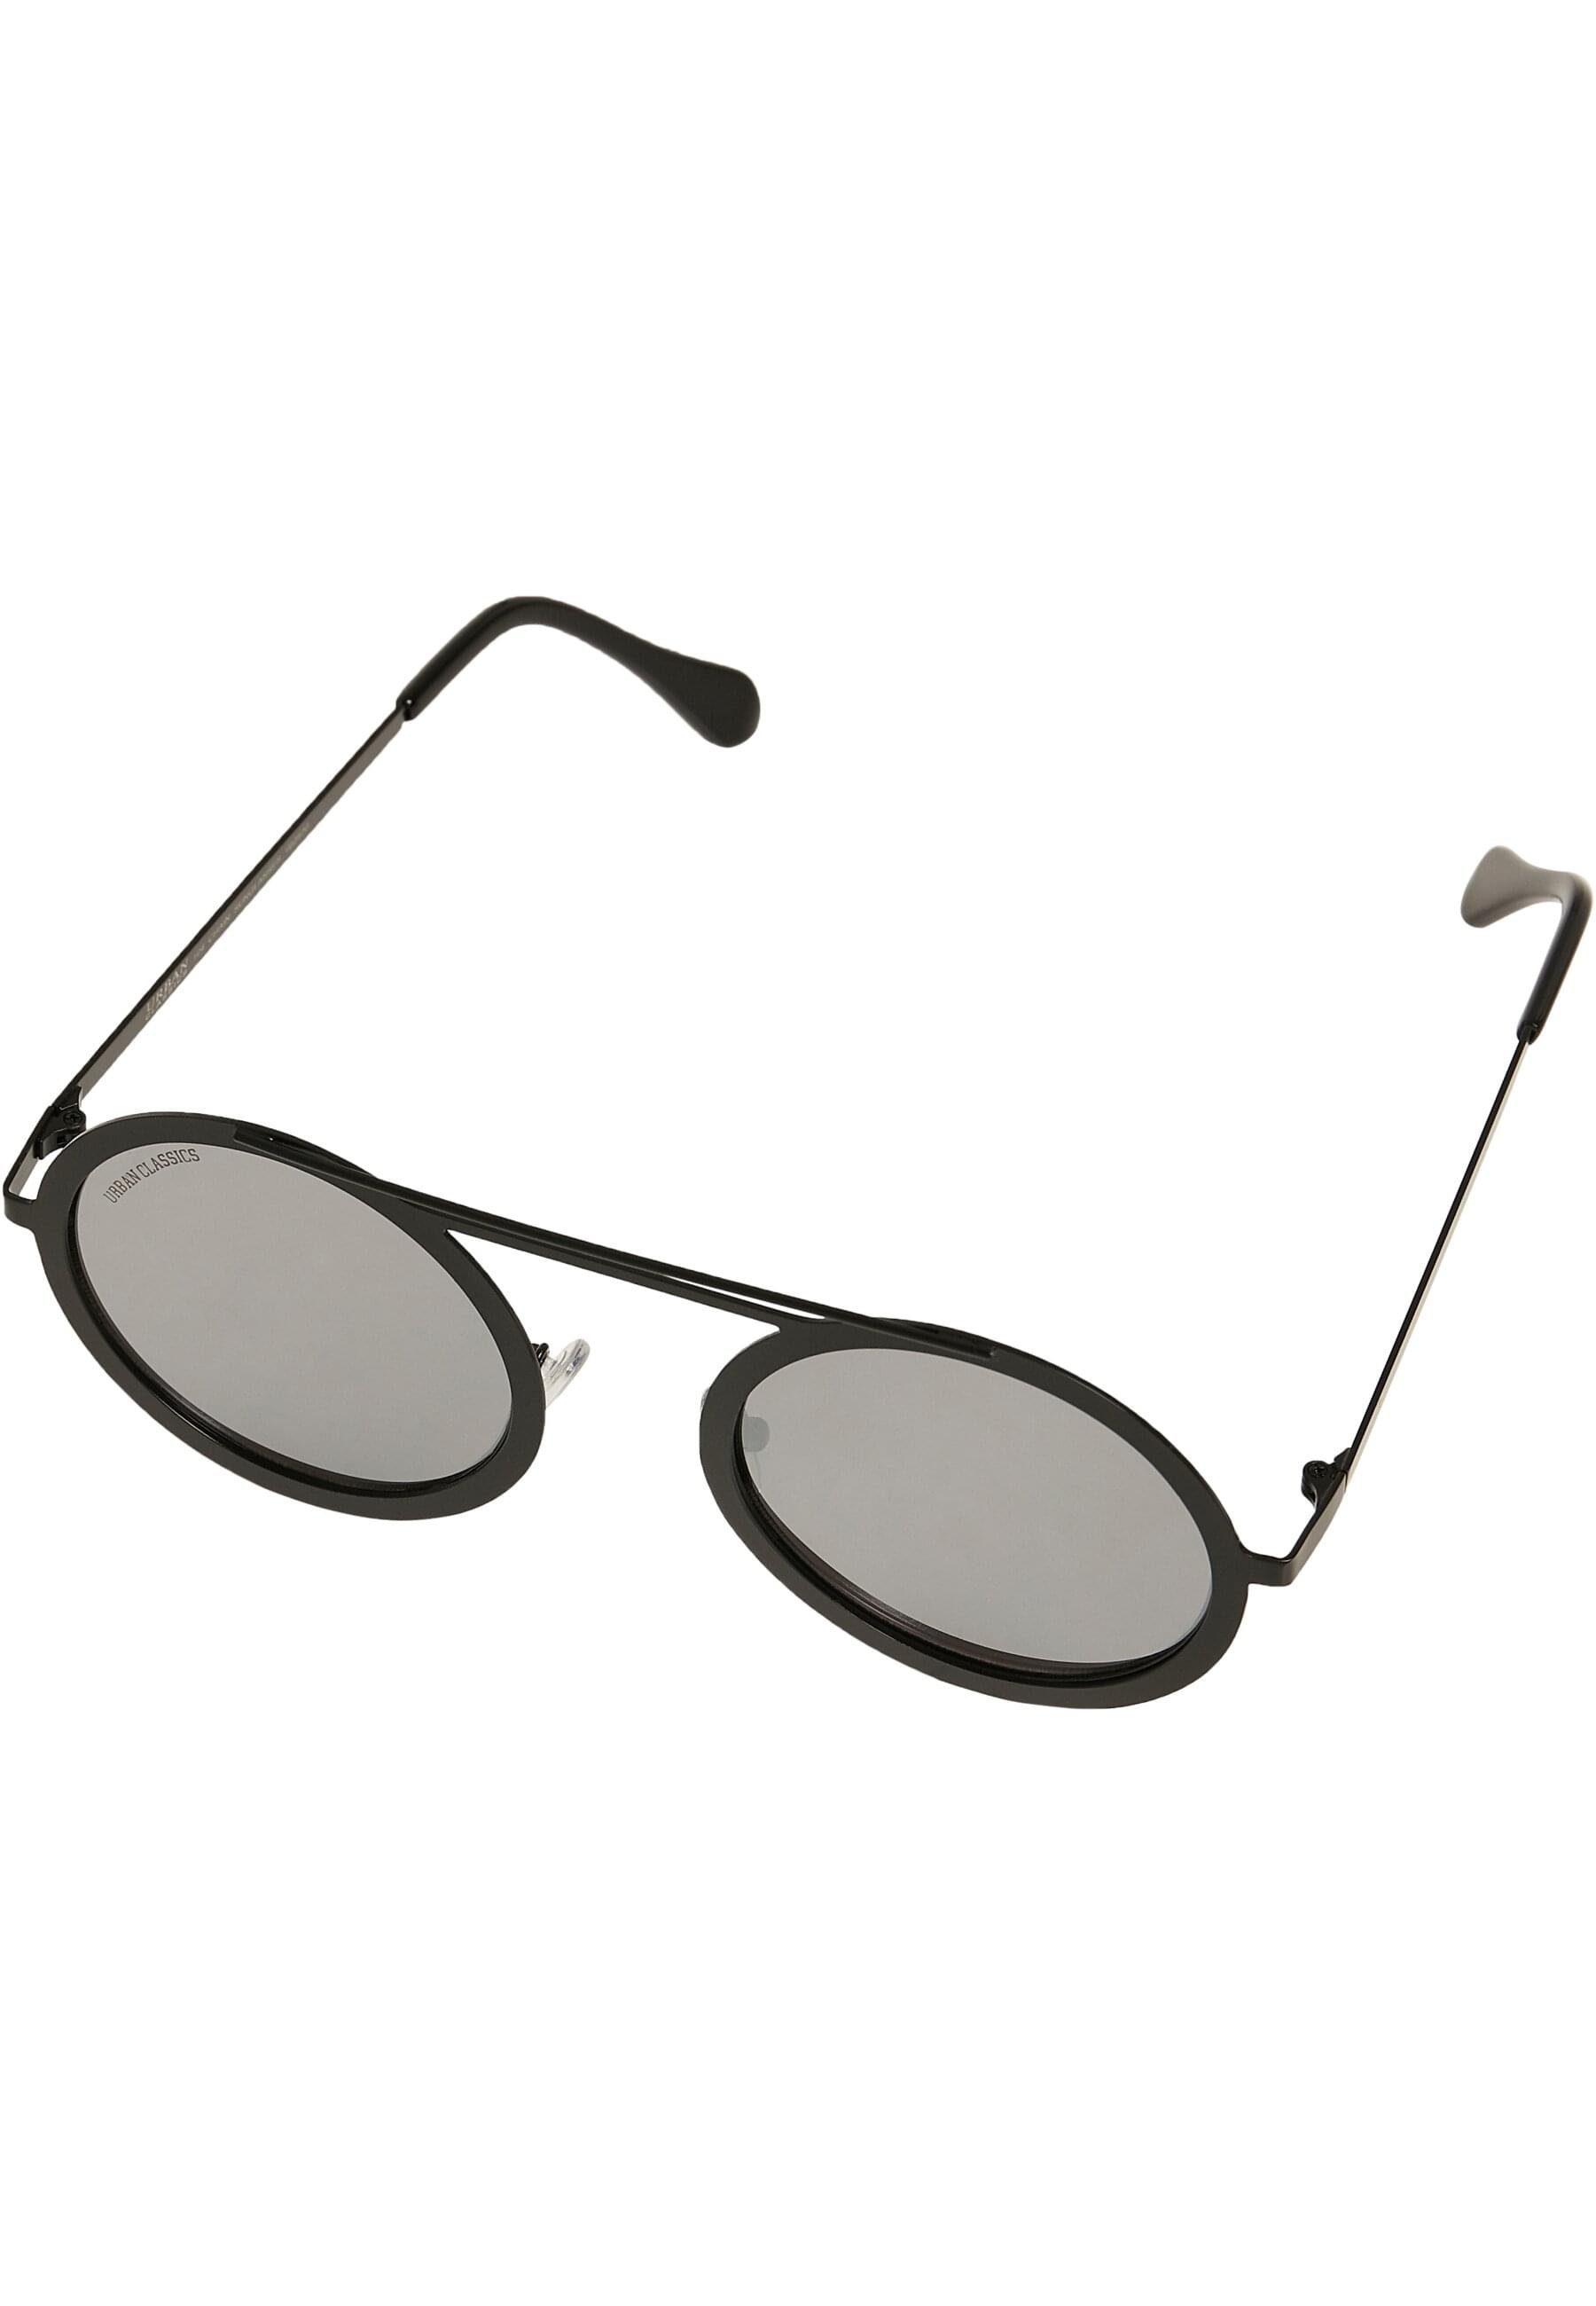 URBAN Chain 104 Unisex mirror/black silver CLASSICS Sunglasses Sonnenbrille